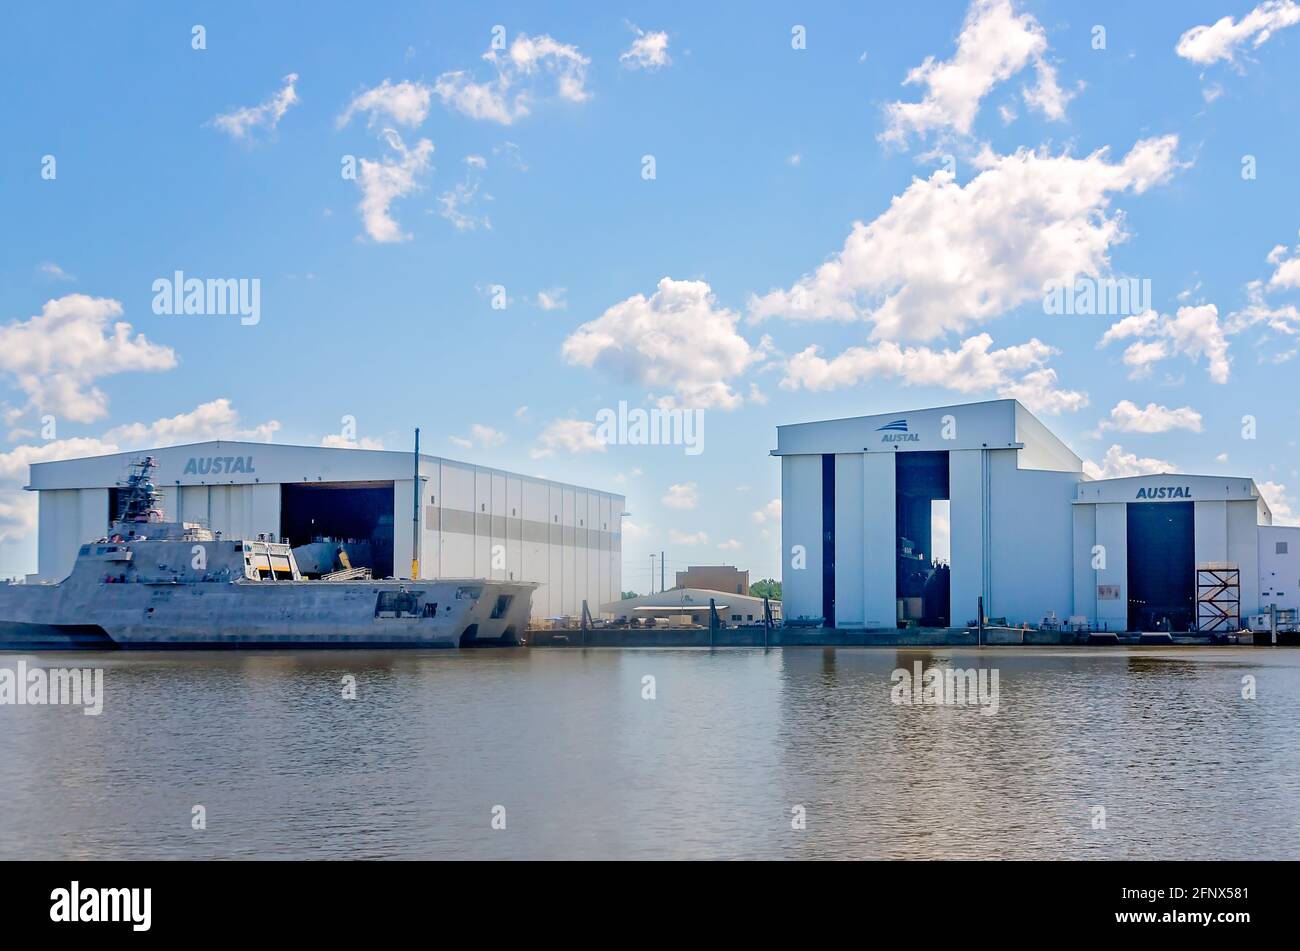 Le USS Canberra (LCS 30), un navire de combat littoral, est amarré à l'usine de fabrication de navires d'Austal USA, sur la rivière Mobile, le 14 mai 2021, à Mobile, en Alabama Banque D'Images